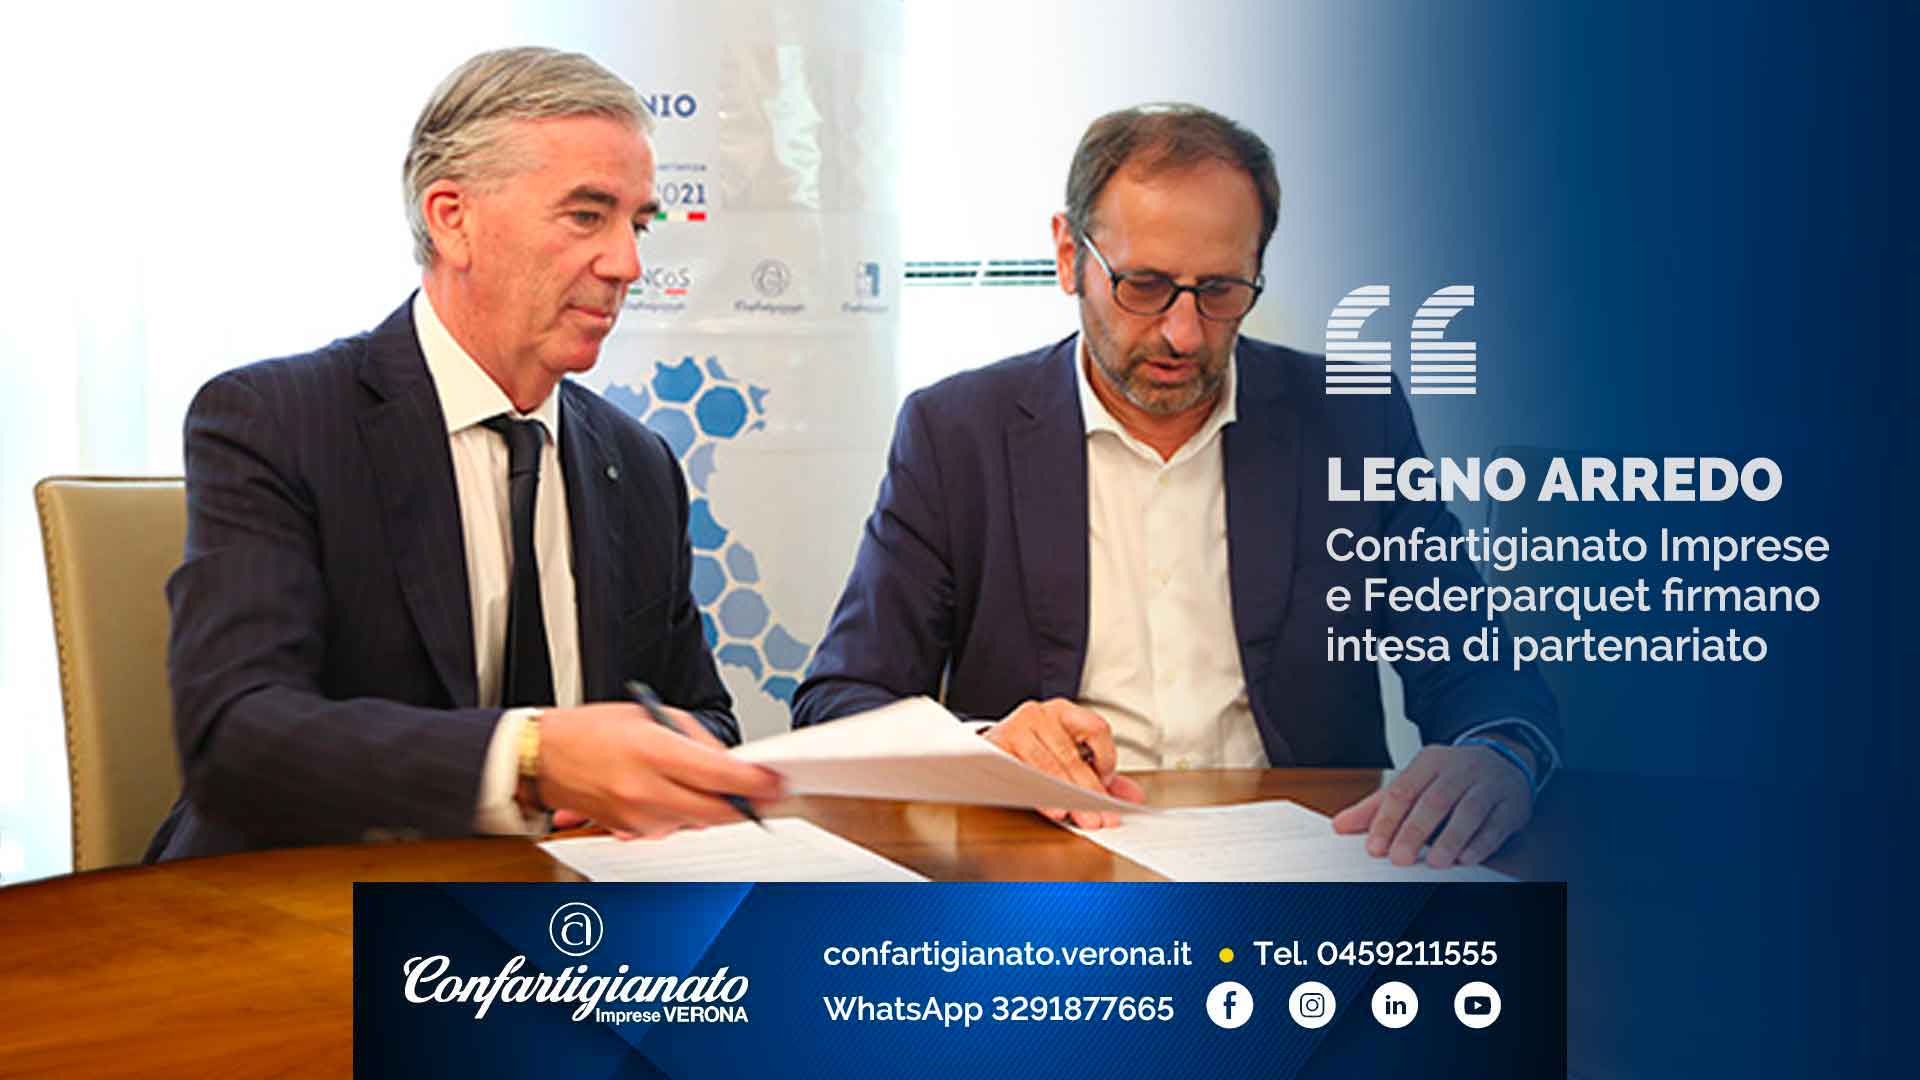 LEGNO E ARREDO – Confartigianato Imprese e Federparquet firmano intesa di partenariato